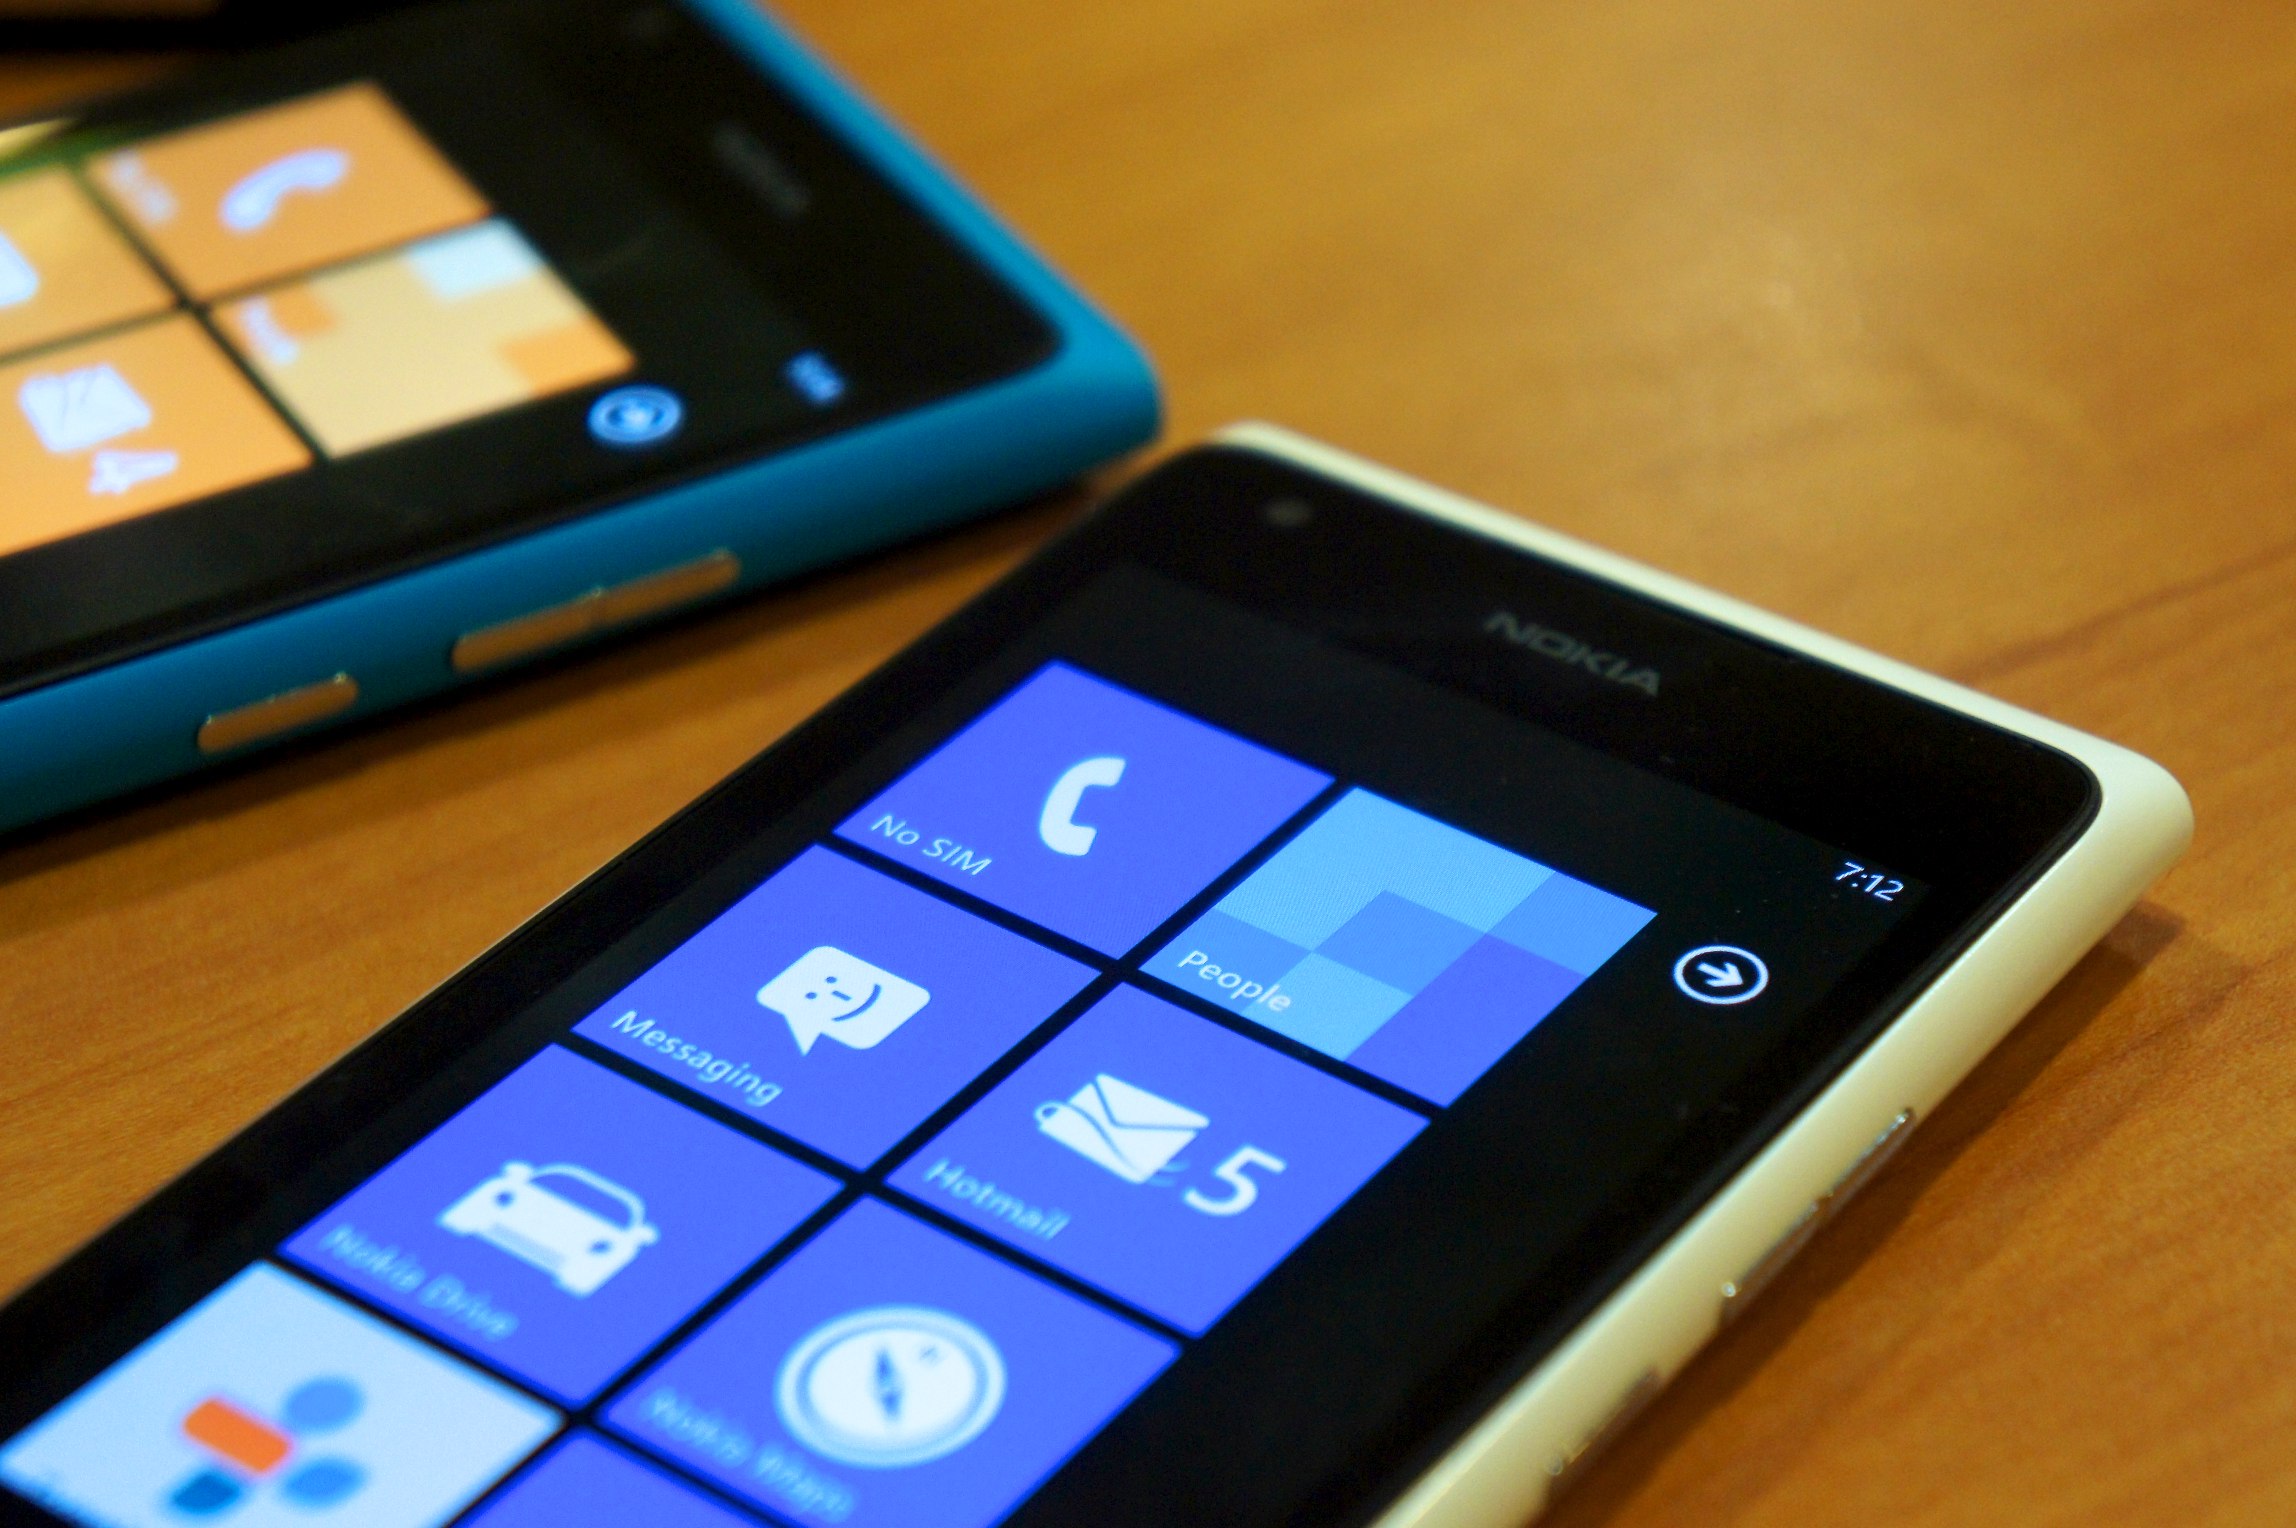 Nokia Lumia 900, uno dei primi Windows Phone della casa finlandese